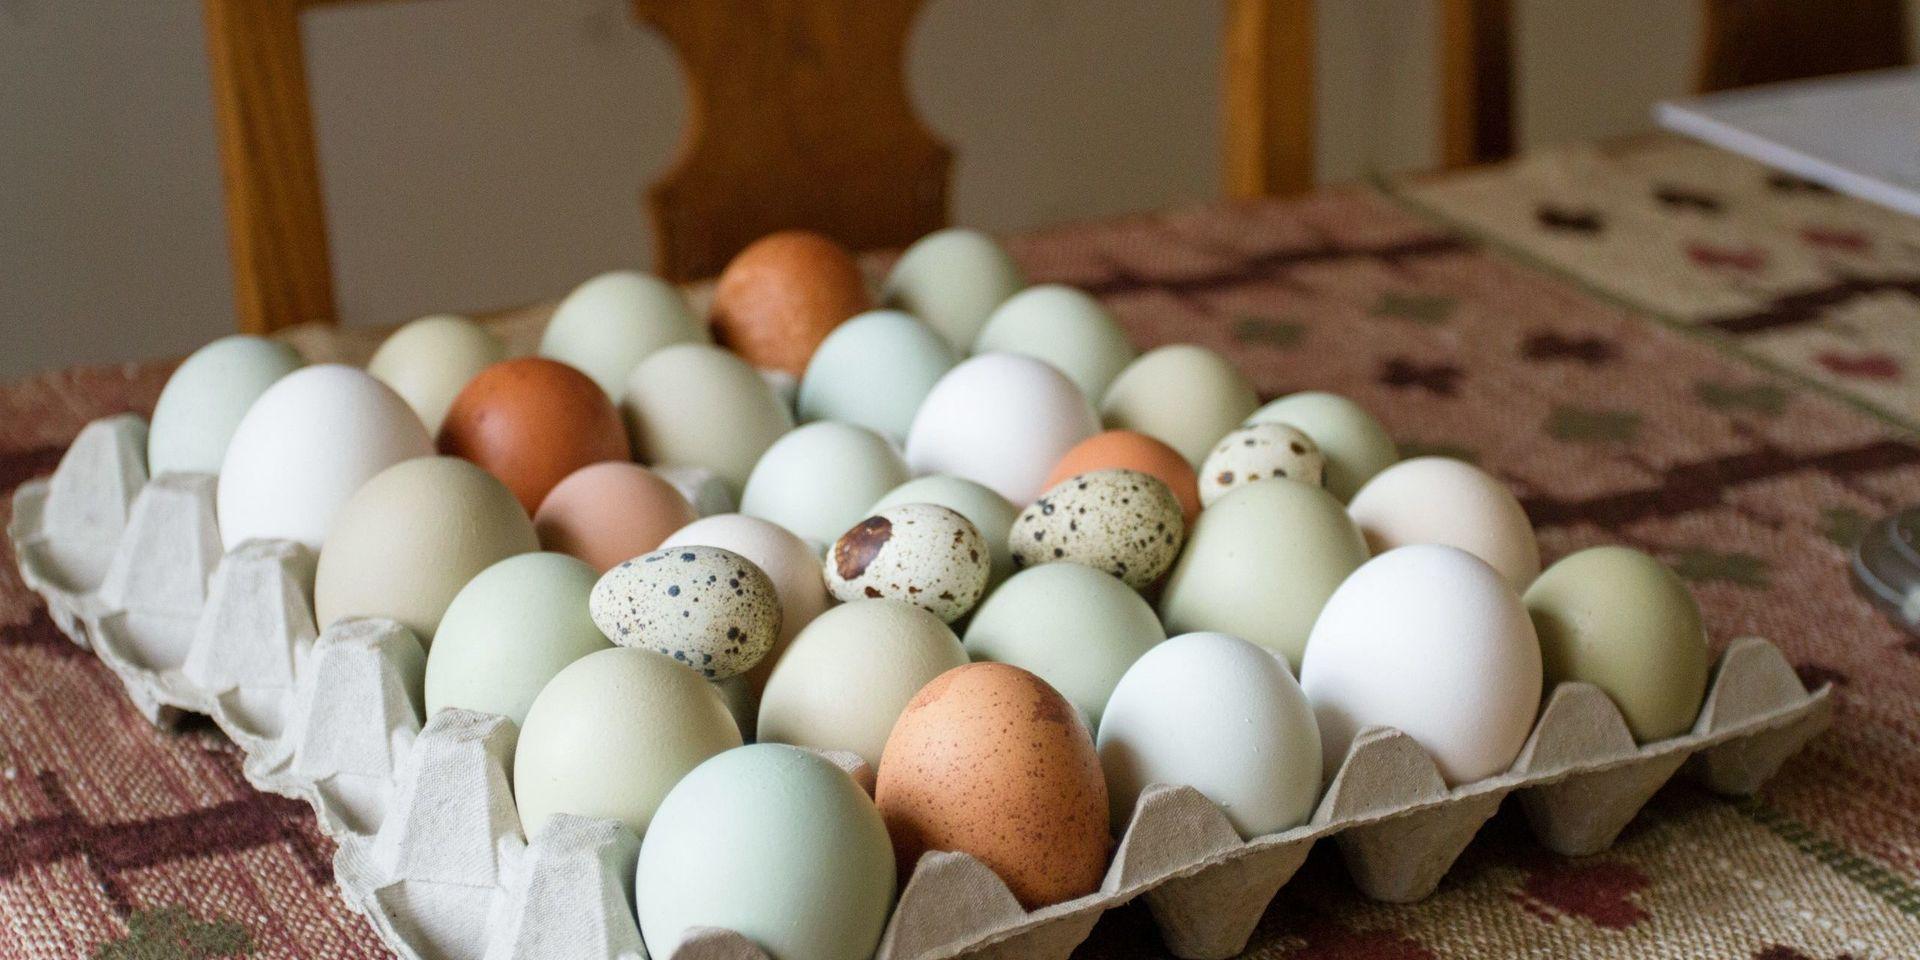 Under helgen har det kommit ett stort antal larm om äggkastning till polisen.